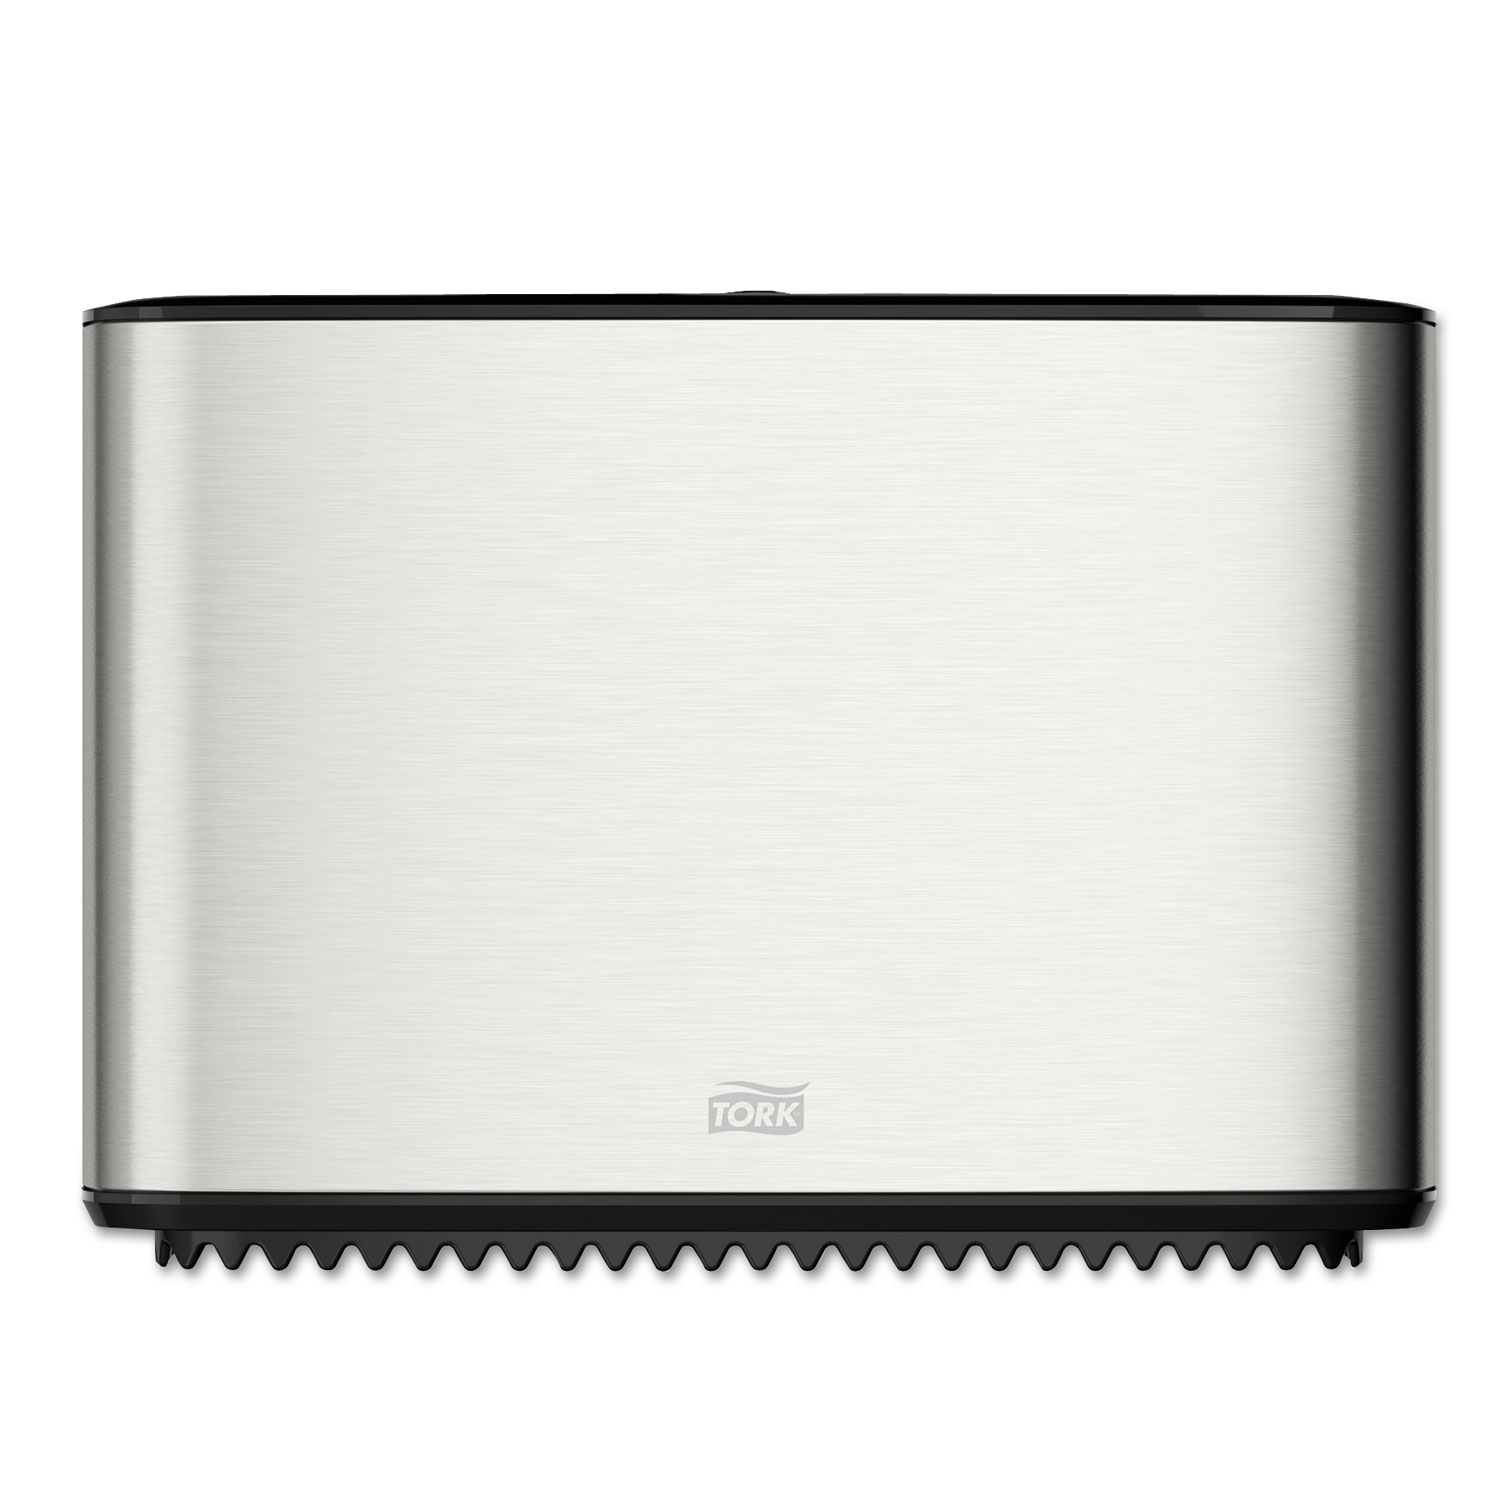  Tork 465500 Image Design Mini Jumbo Bath Tissue Roll Dispenser, 14x5.13x9.88,Stainless Steel (TRK465500) 